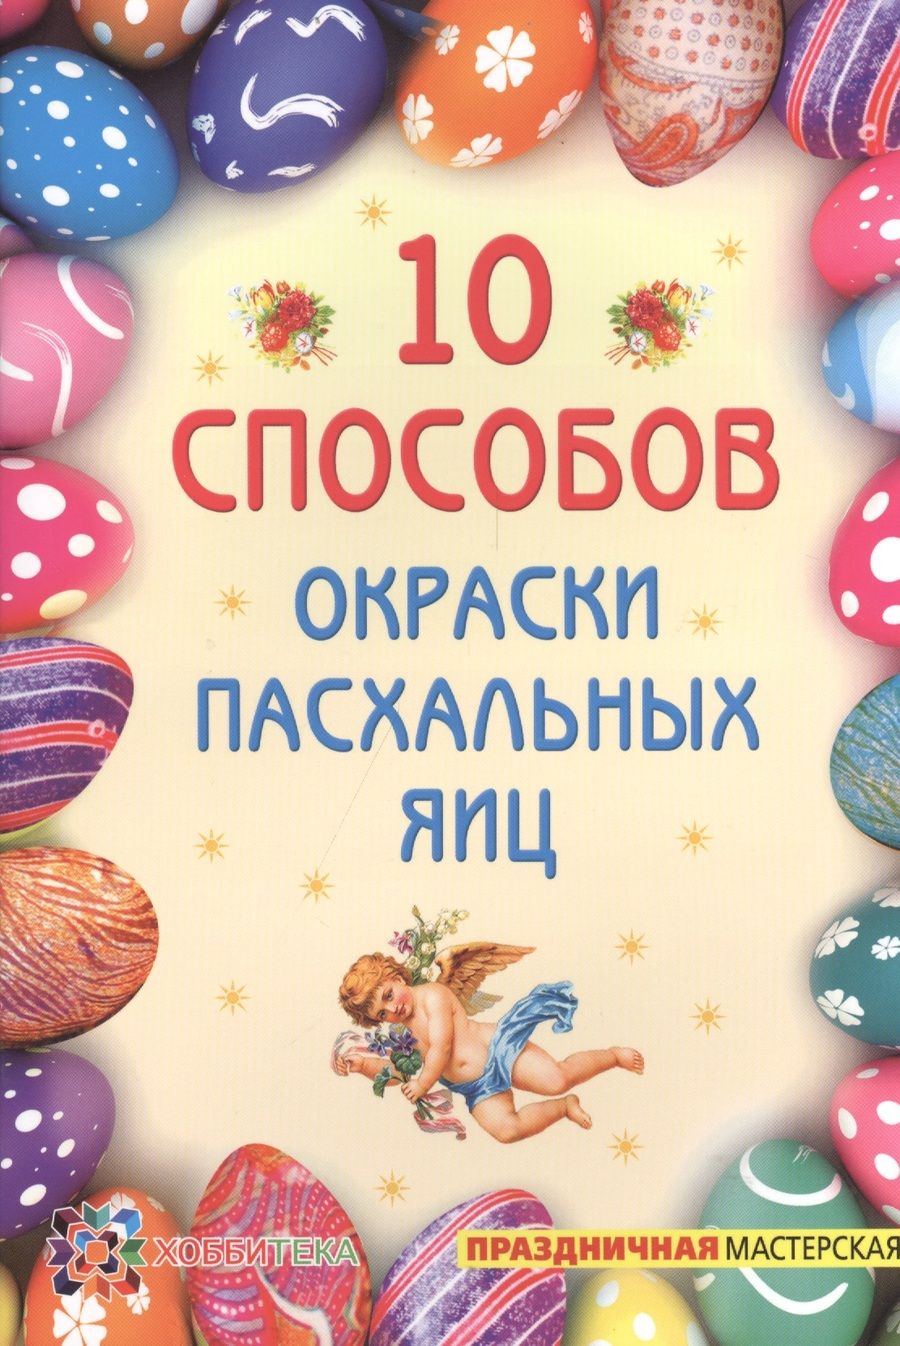 Обложка книги "Ирина Иванова: 10 способов окраски пасхальных яиц"